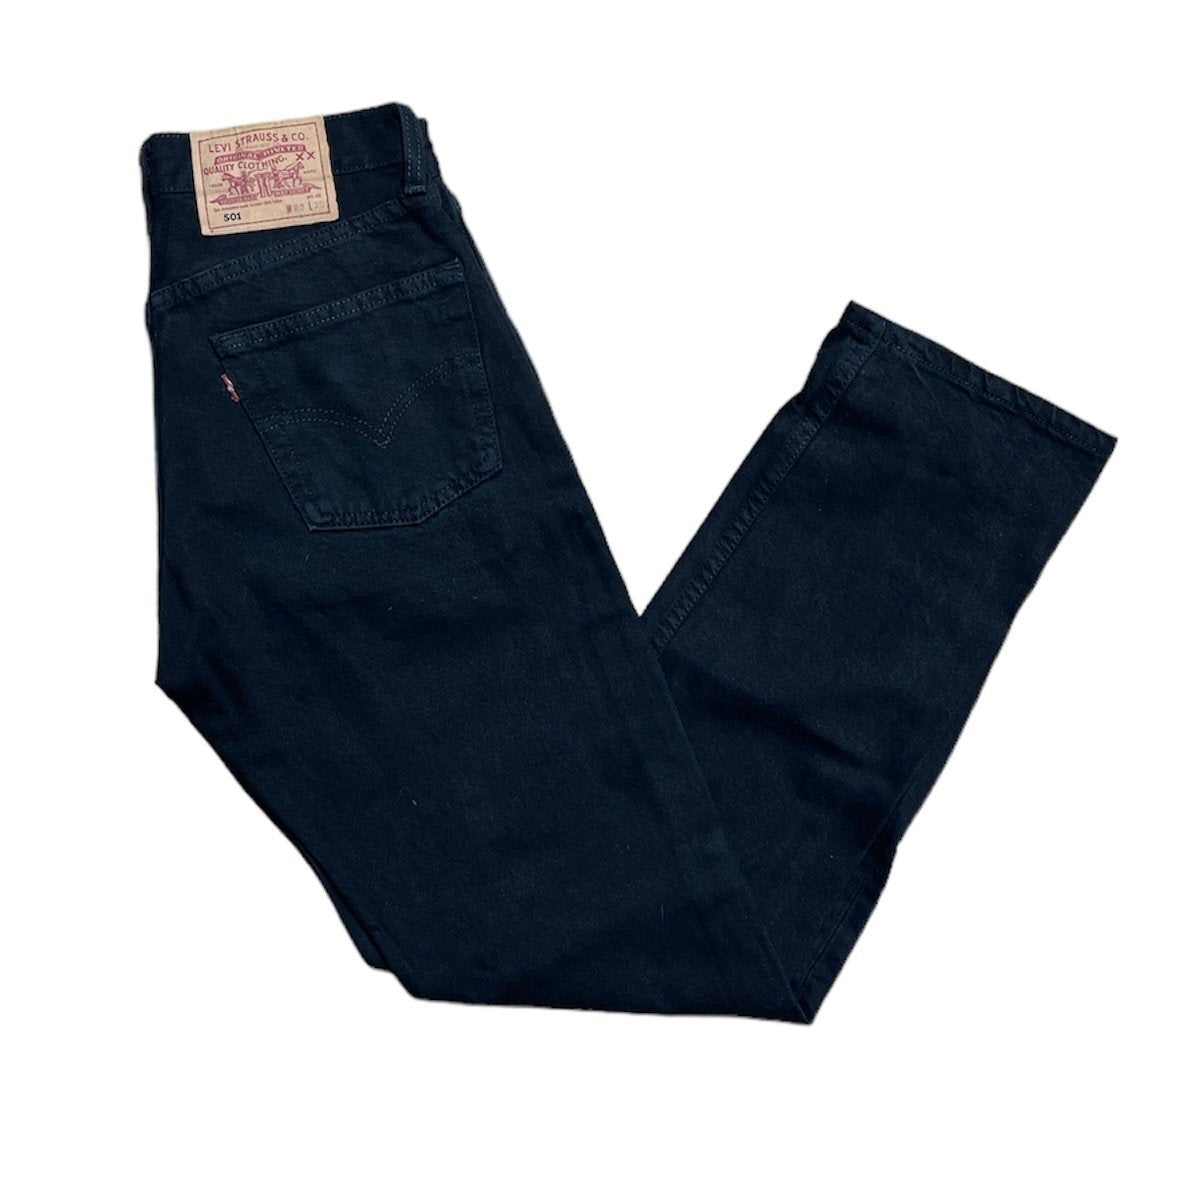 Vintage Levis 501 Black Jeans (W28/L30)